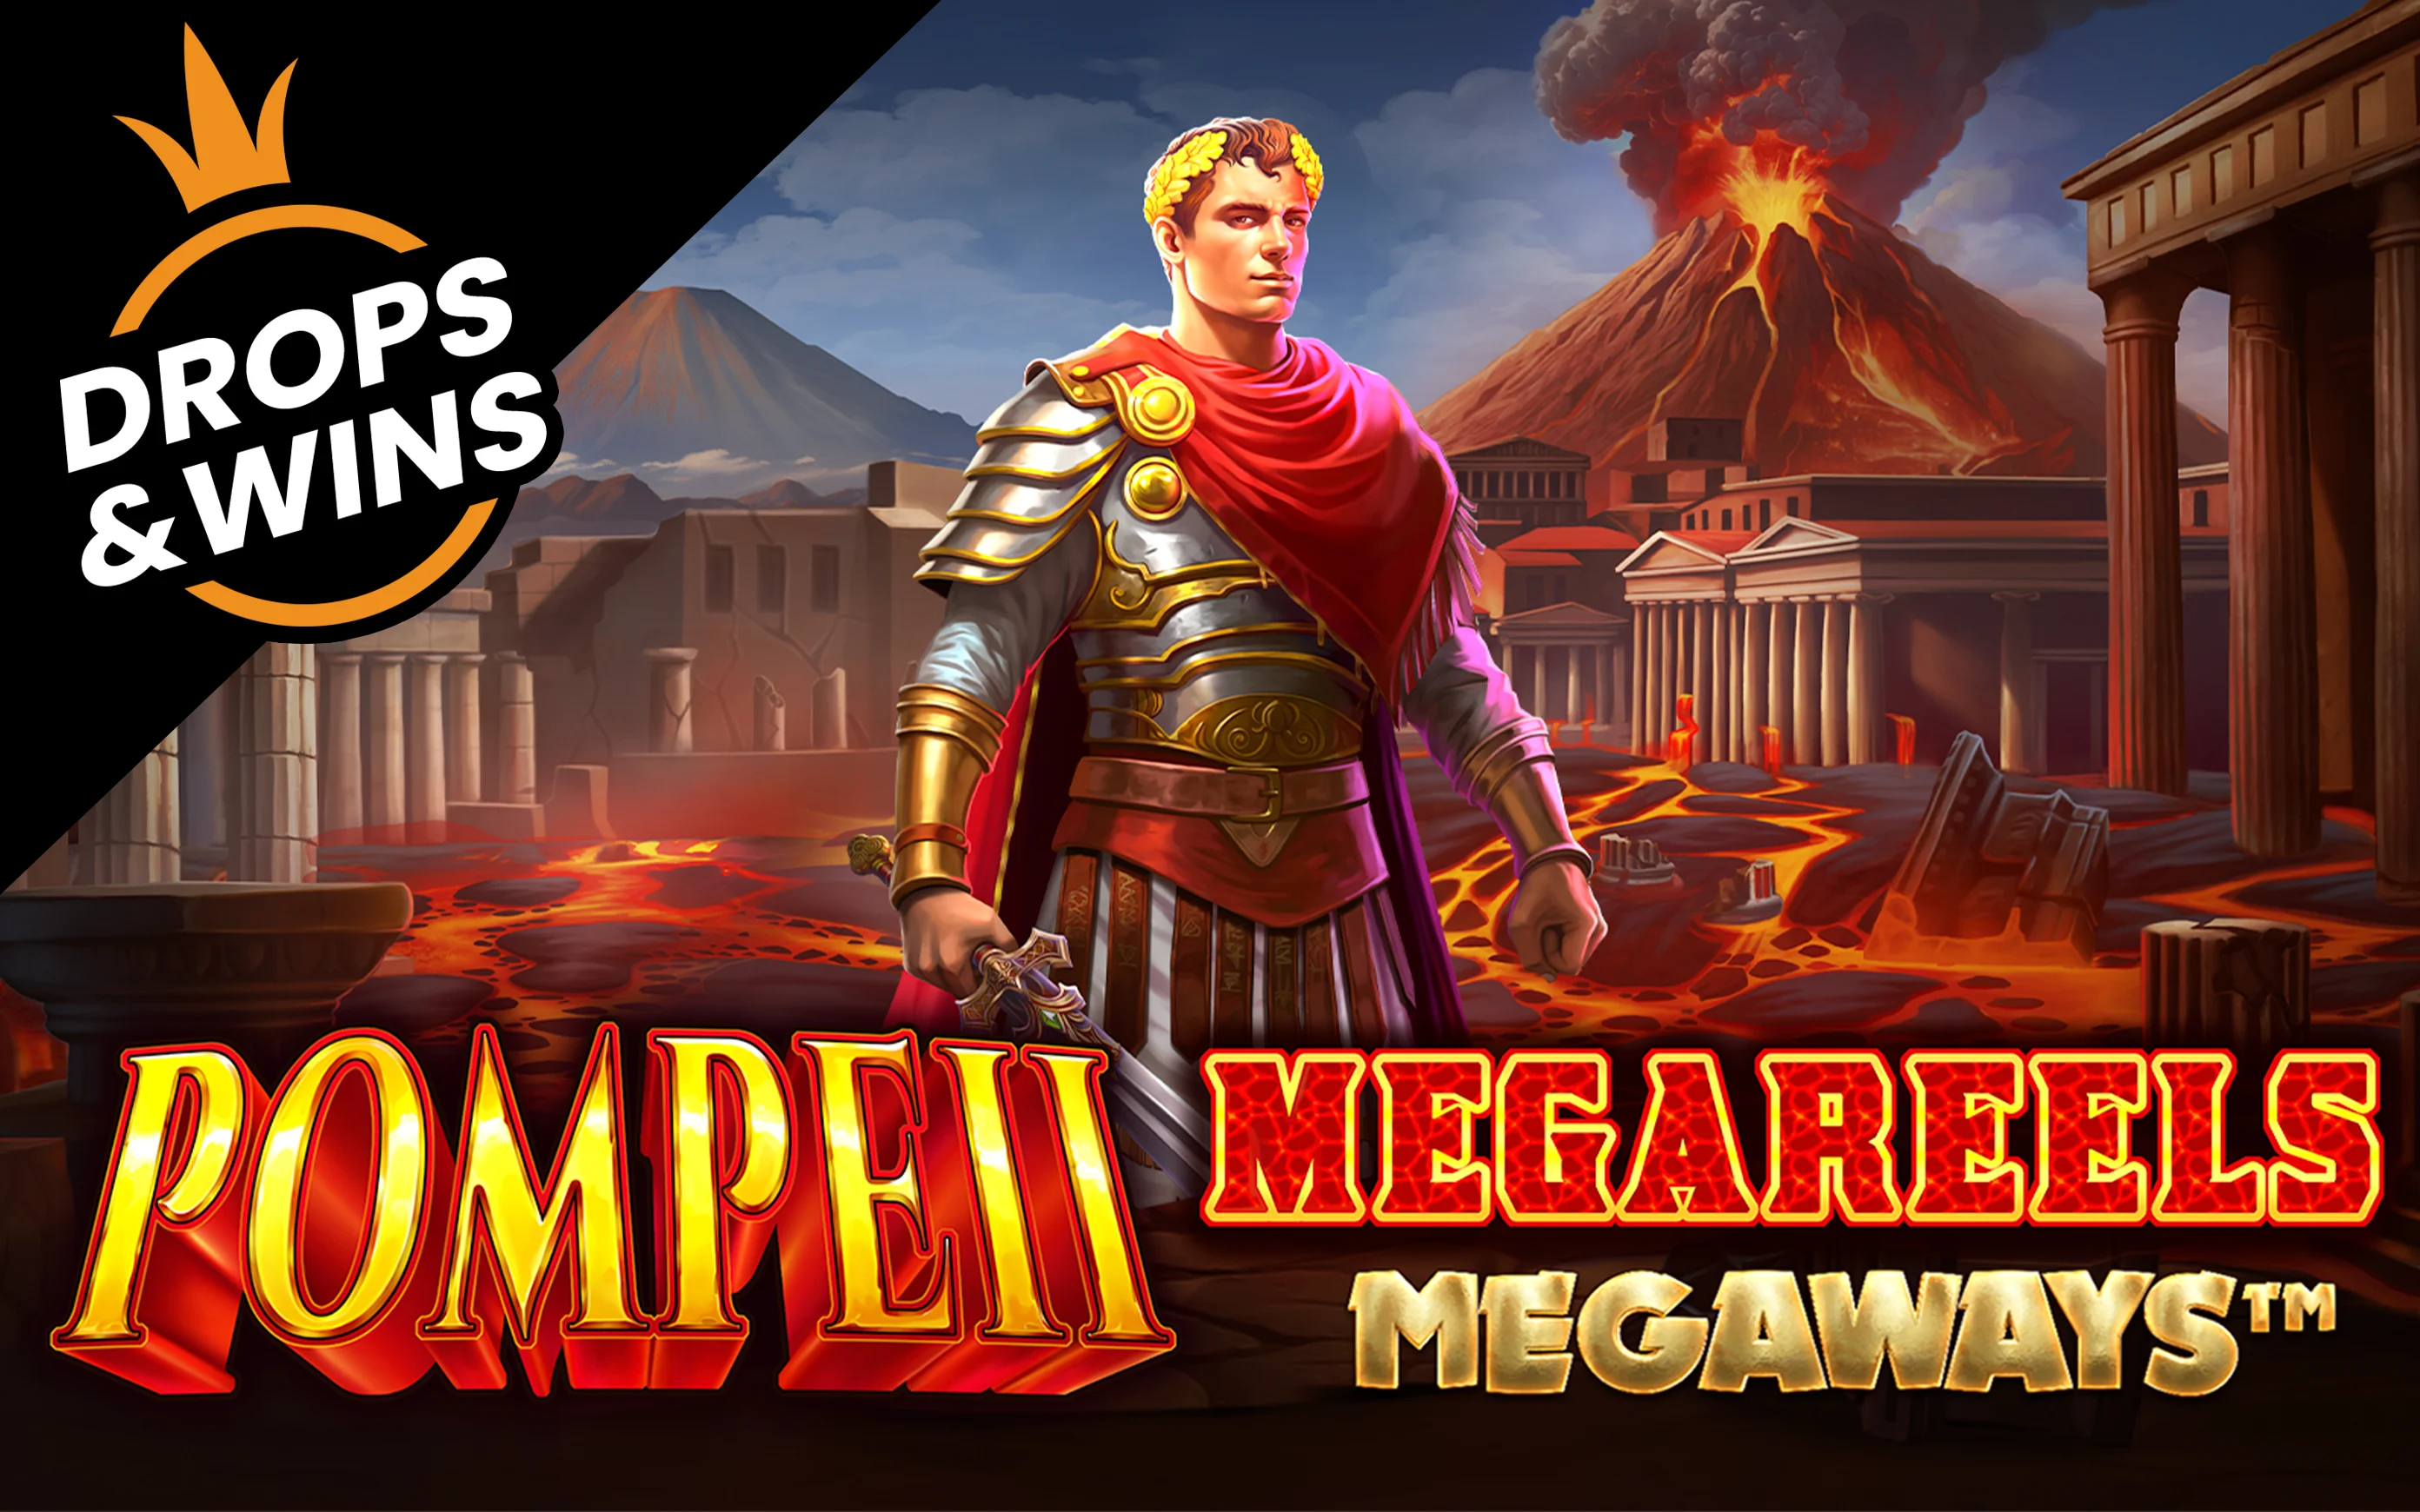 Играйте Pompeii Megareels Megaways™ на Starcasino.be онлайн казино